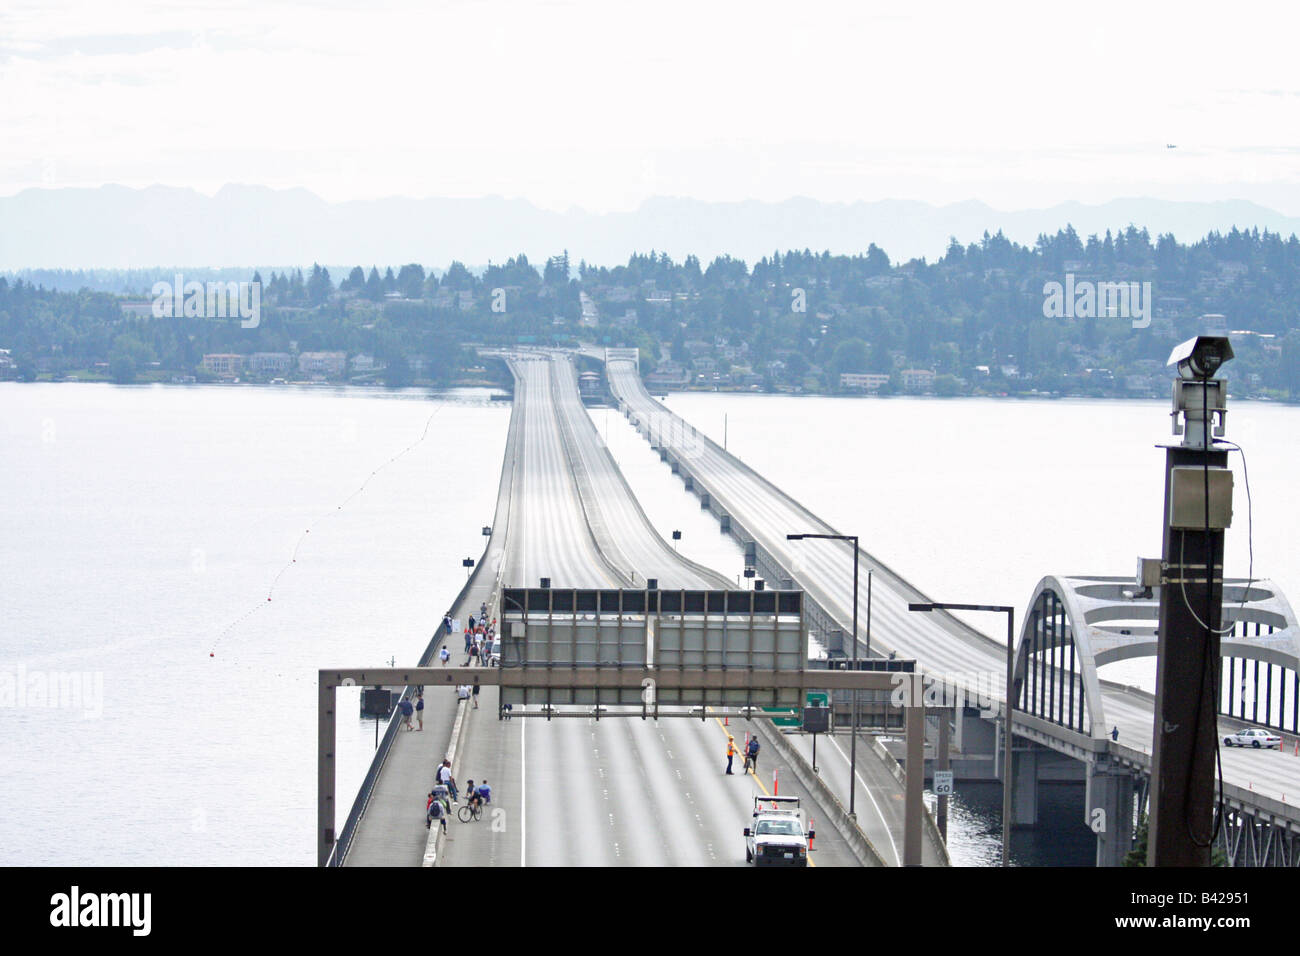 Seattle ist eines der schlimmsten Flecken in den USA für Autobahn-Stau, so dass dies einer leeren 90 Brücke erschossen sieht seltsam. Stockfoto